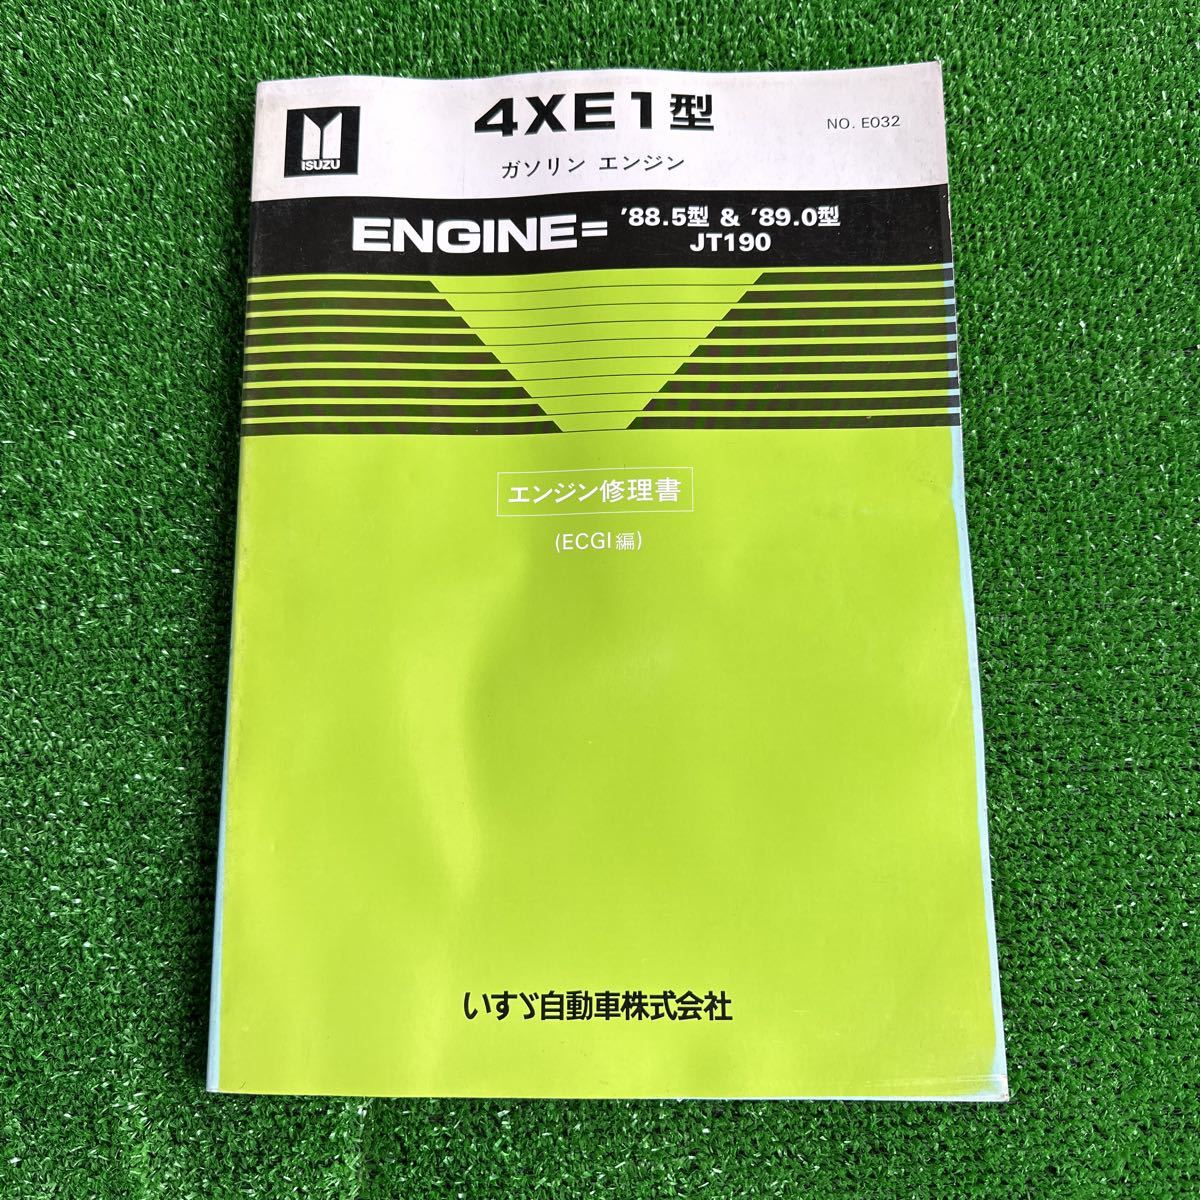 95、いすゞ　4XE1型　‘88.5型’89.0型　JT190 ガソリンエンジン　エンジン修理書　(ECGI編)